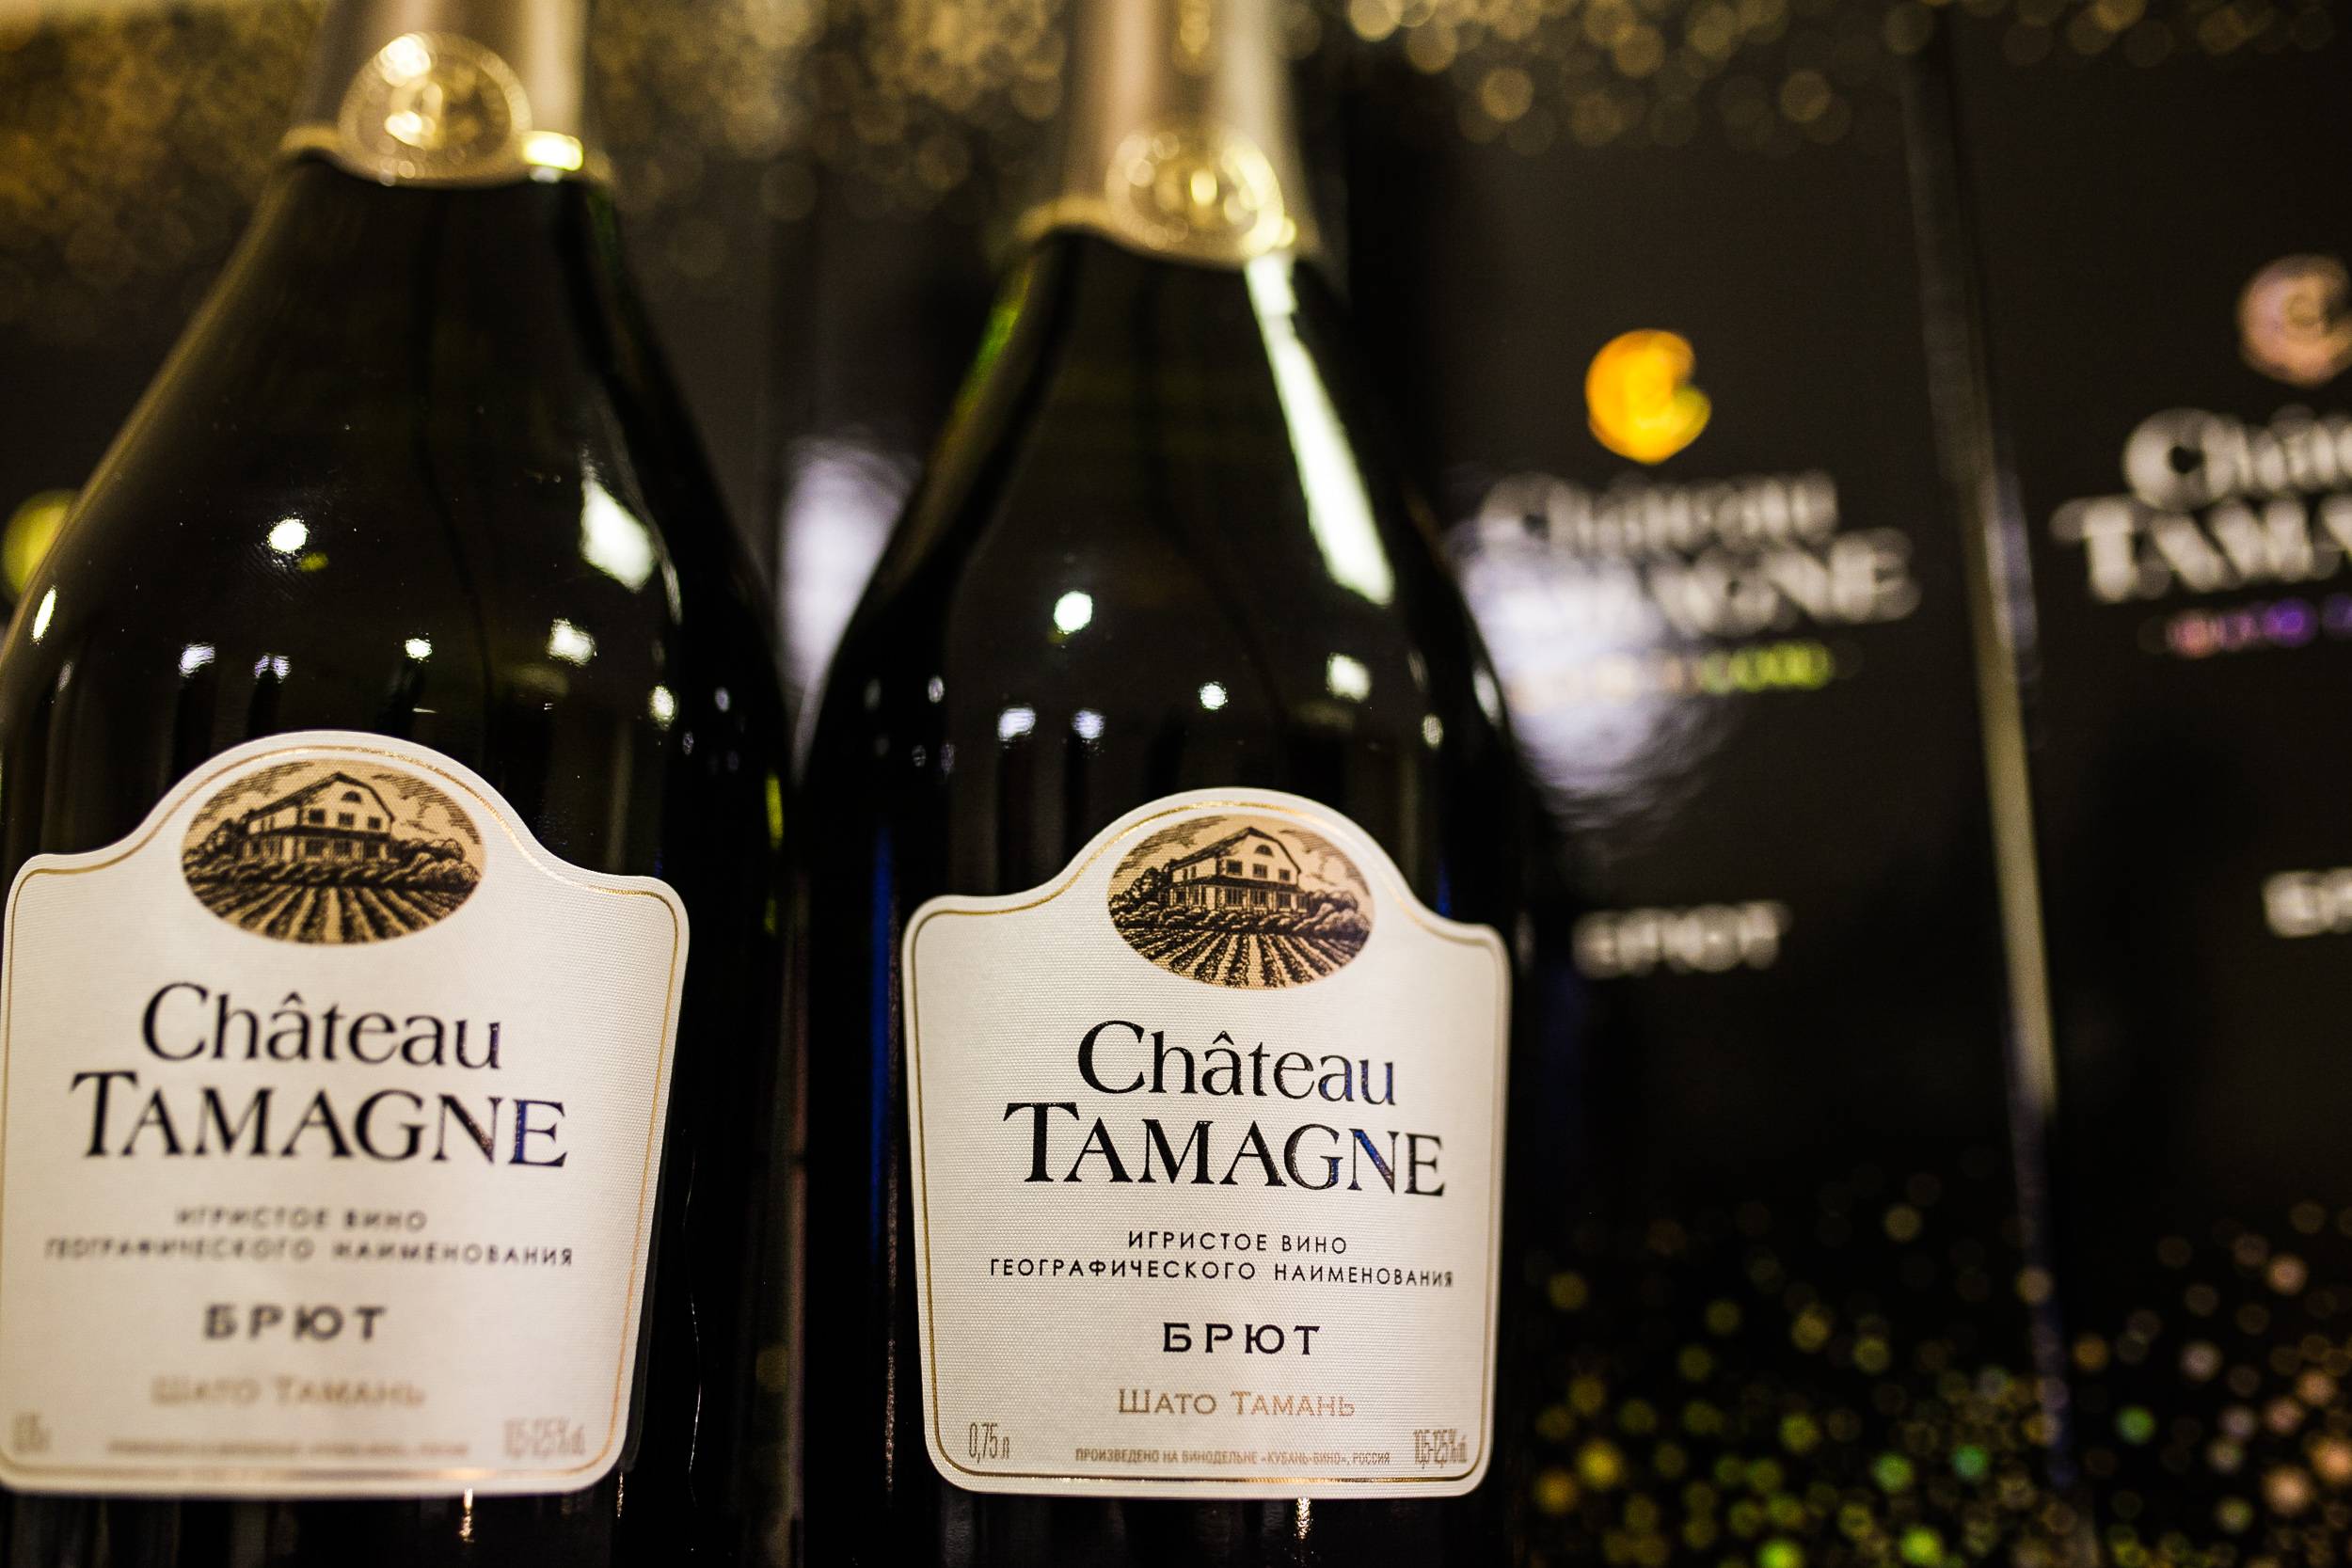 Шампанское tamagne полусладкое. Chateau Tamagne Шато Тамань. Шато де Тамань вино. Шато де Тамань шампанское. Шато Тамань винодельня.